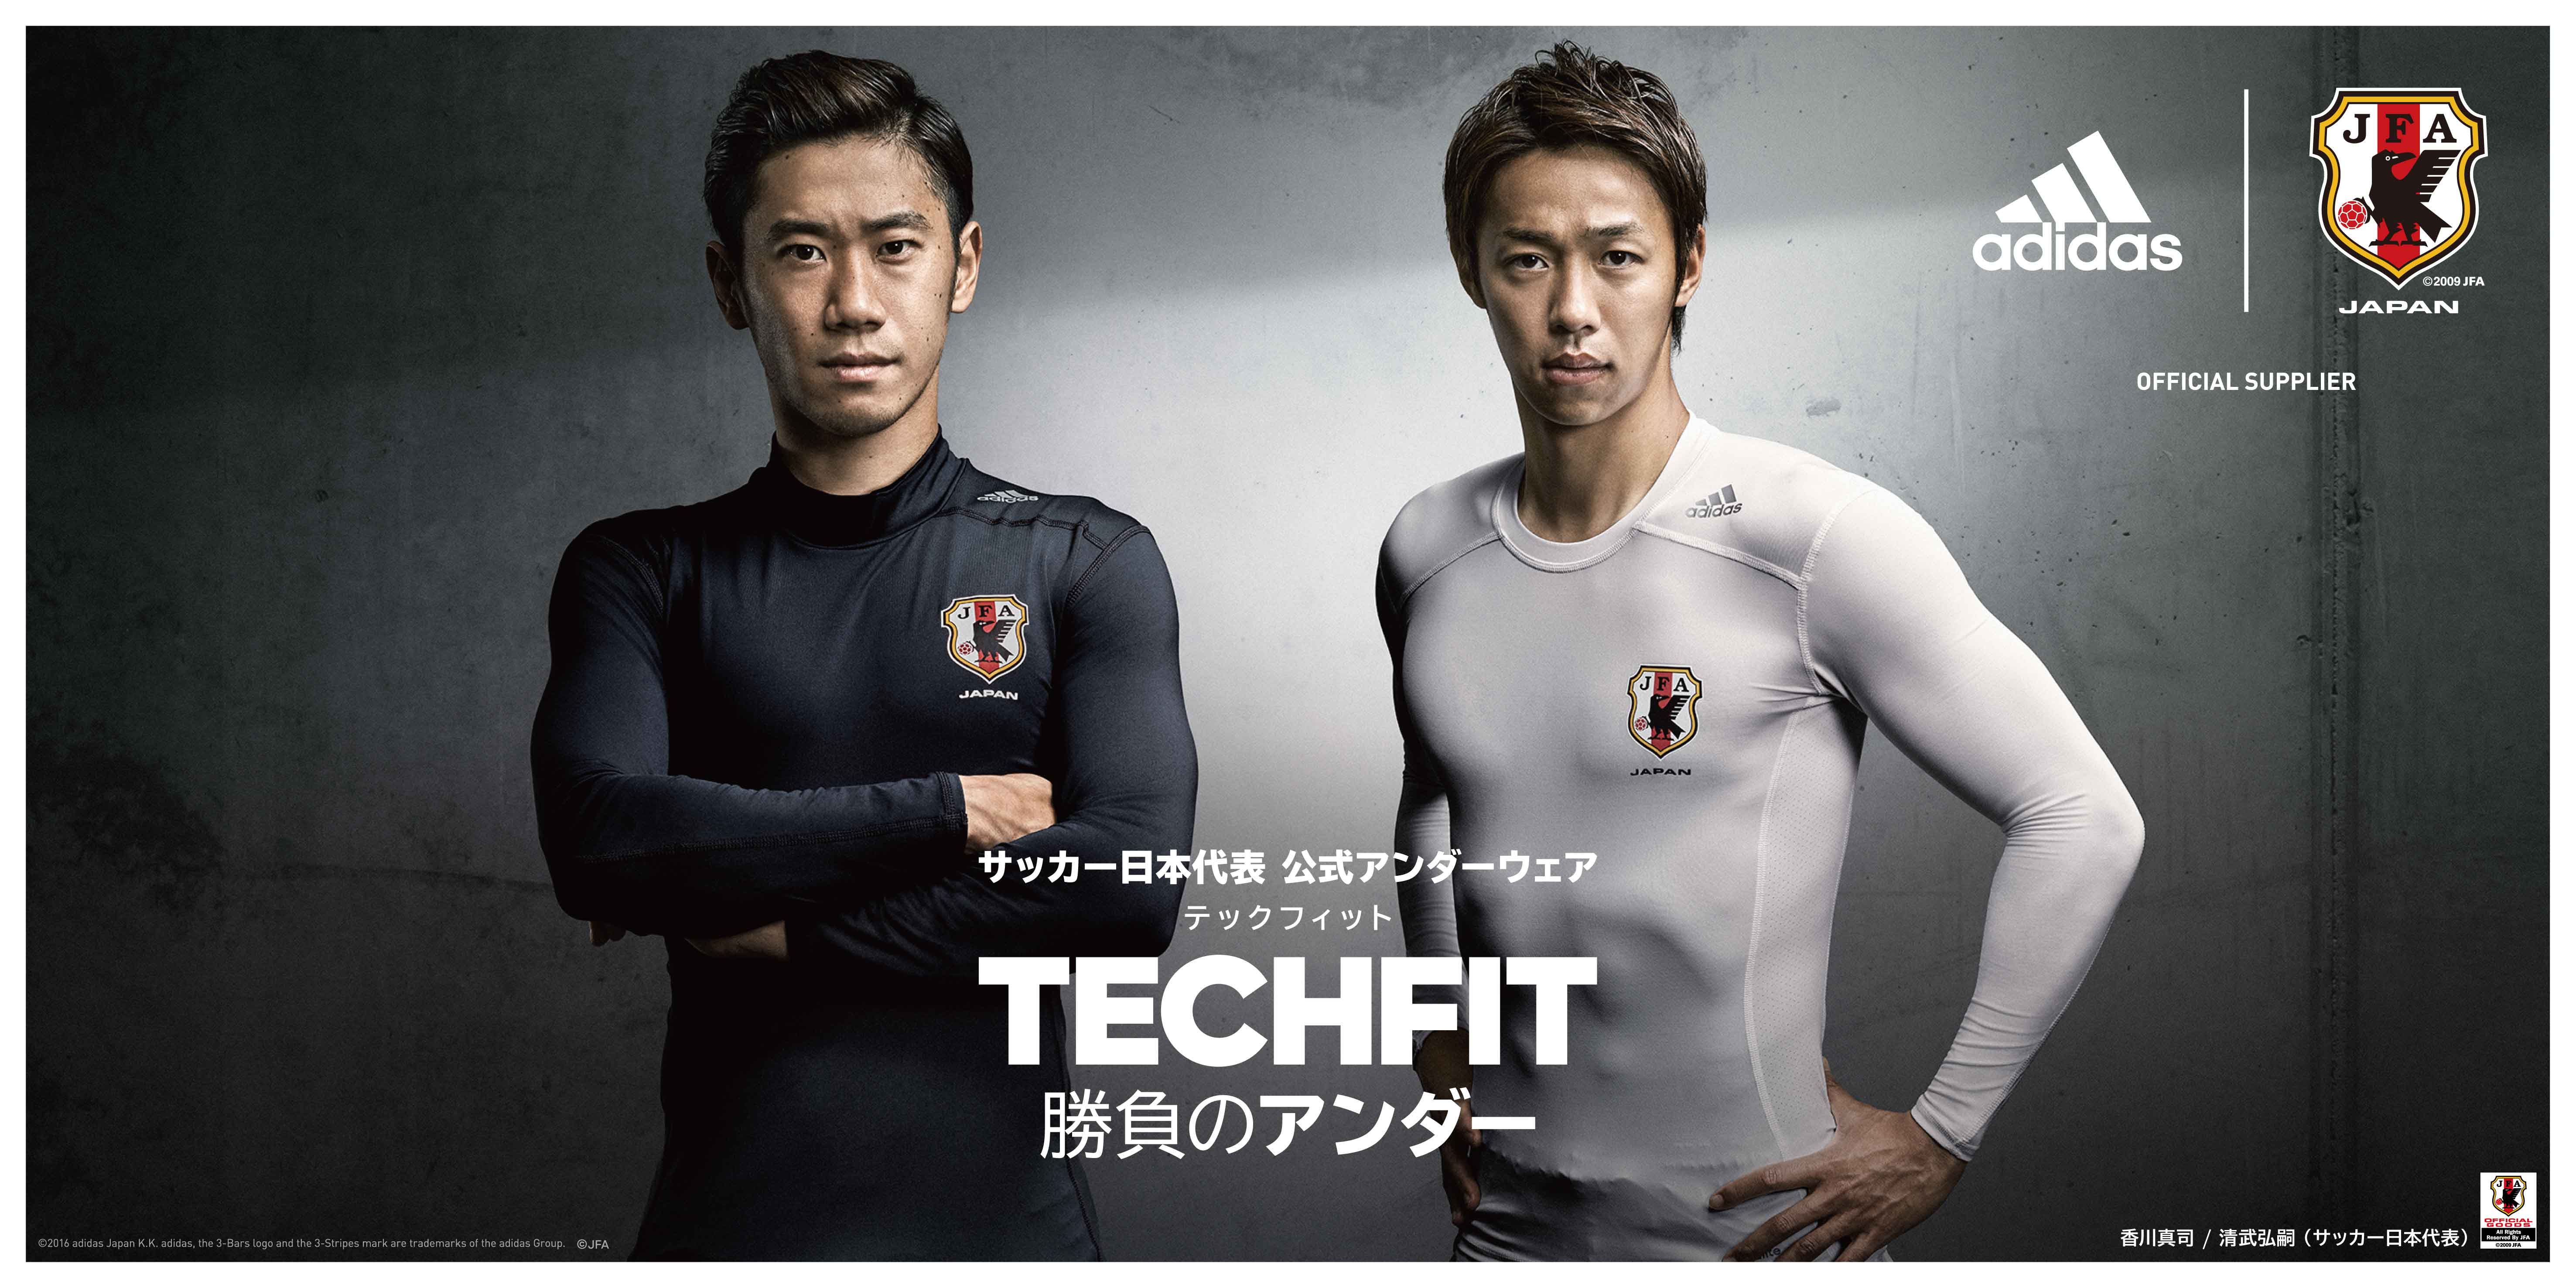 アディダスのコンプレッションウェア Techfit テックフィット サッカー日本代表公式アンダーウェアとして採用限定モデルを16年9月1日 木 10 00より発売 アディダス ジャパン株式会社のプレスリリース